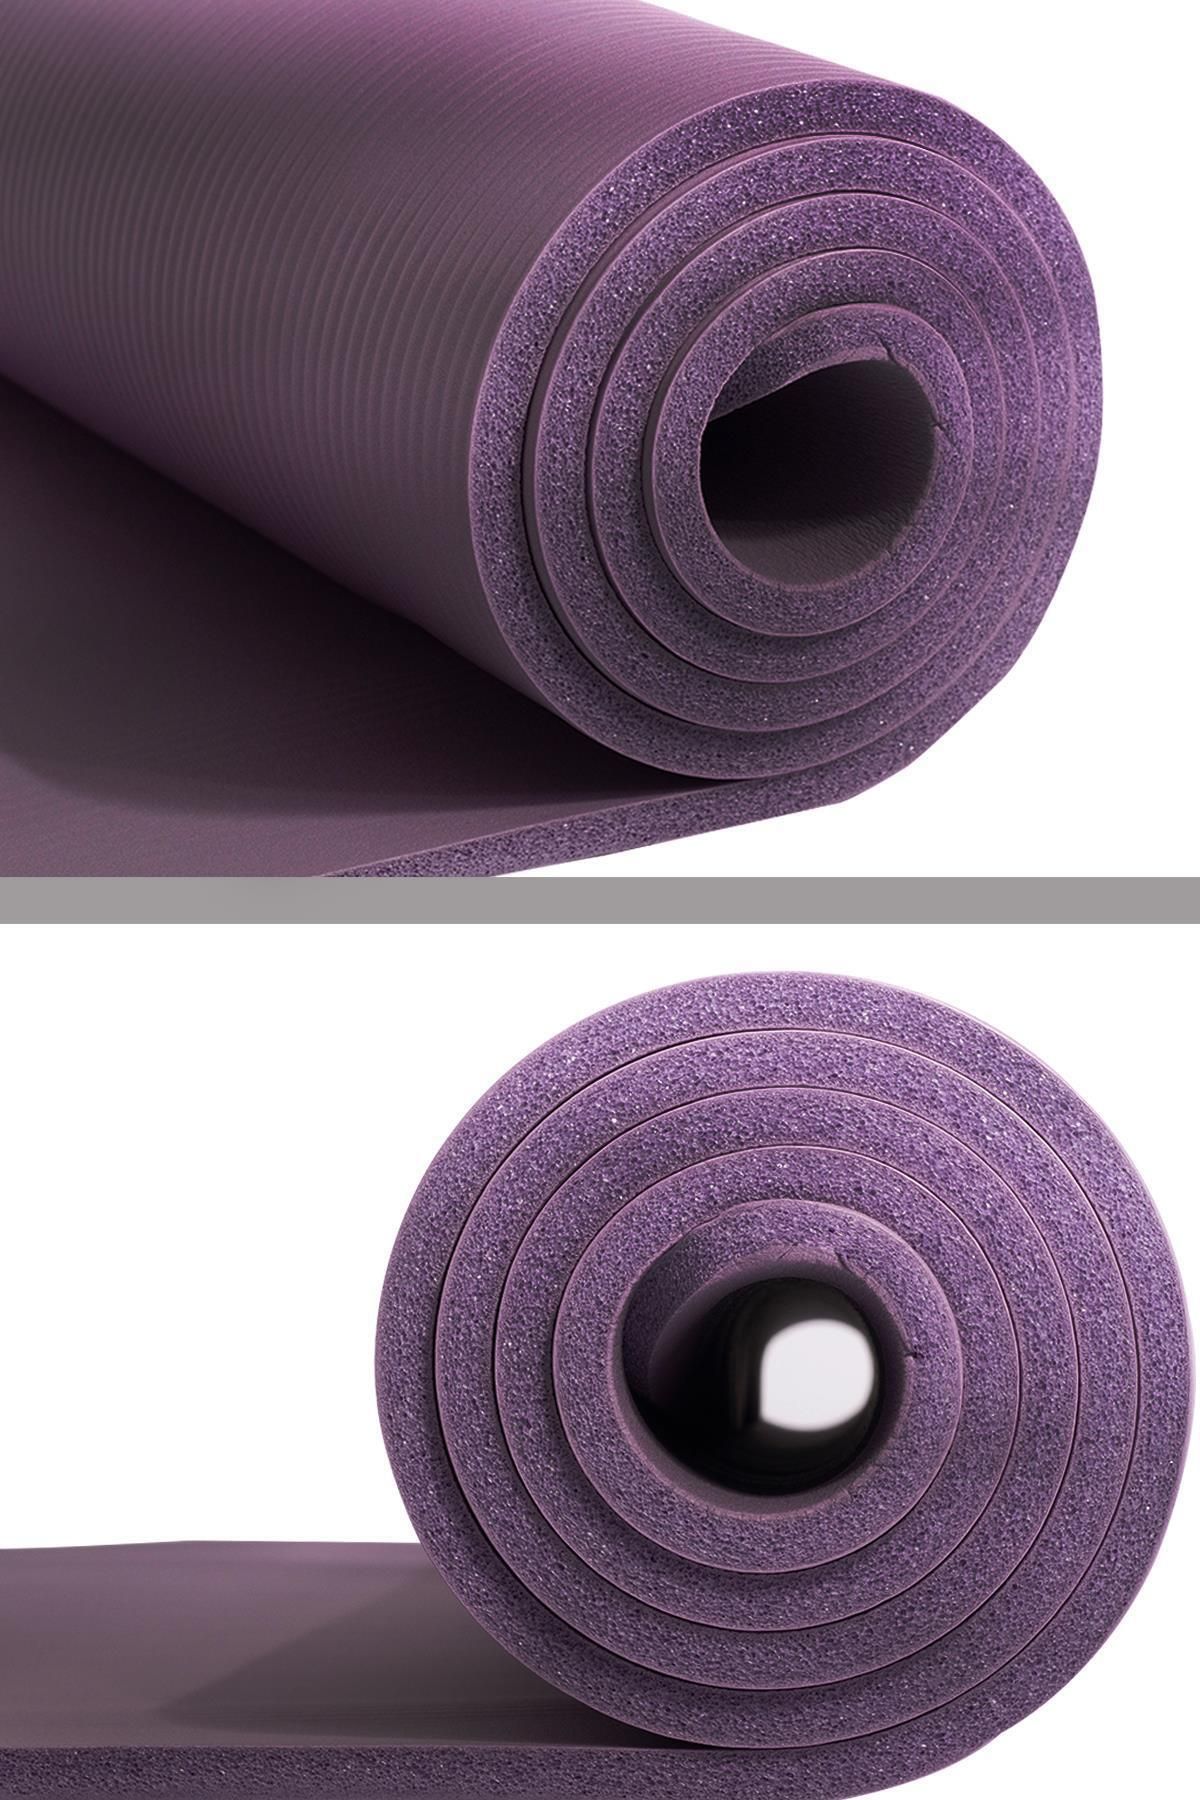 Konfor Zemin 15 mm Taşıma Askılı Pilates Minderi Yoga Matı